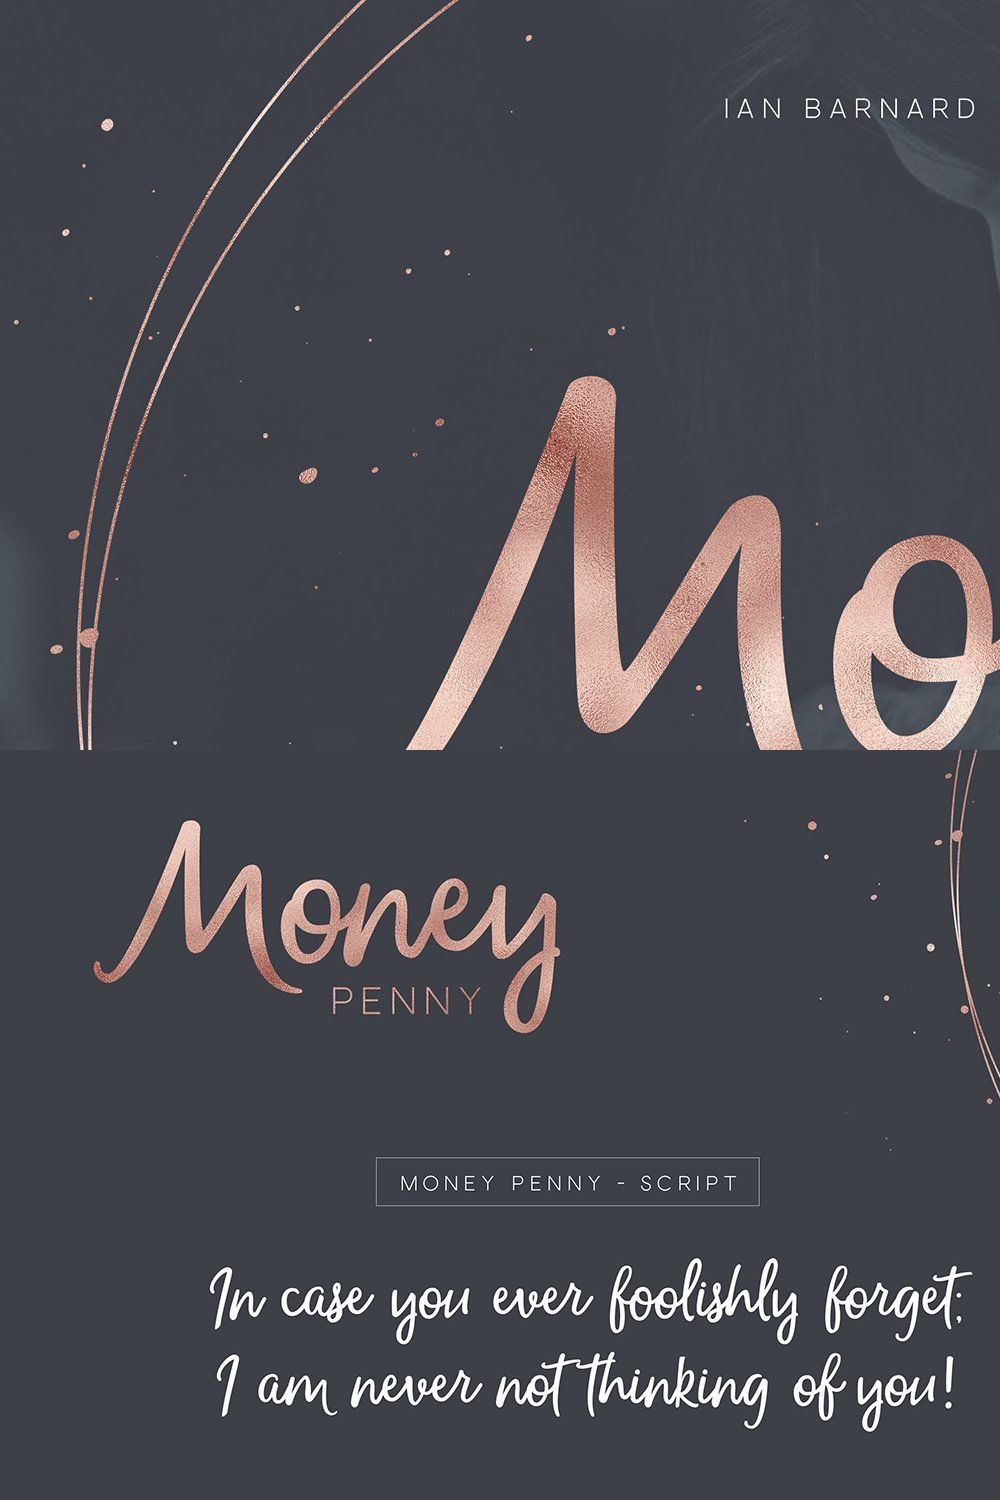 Money Penny - Script & Sans pinterest preview image.